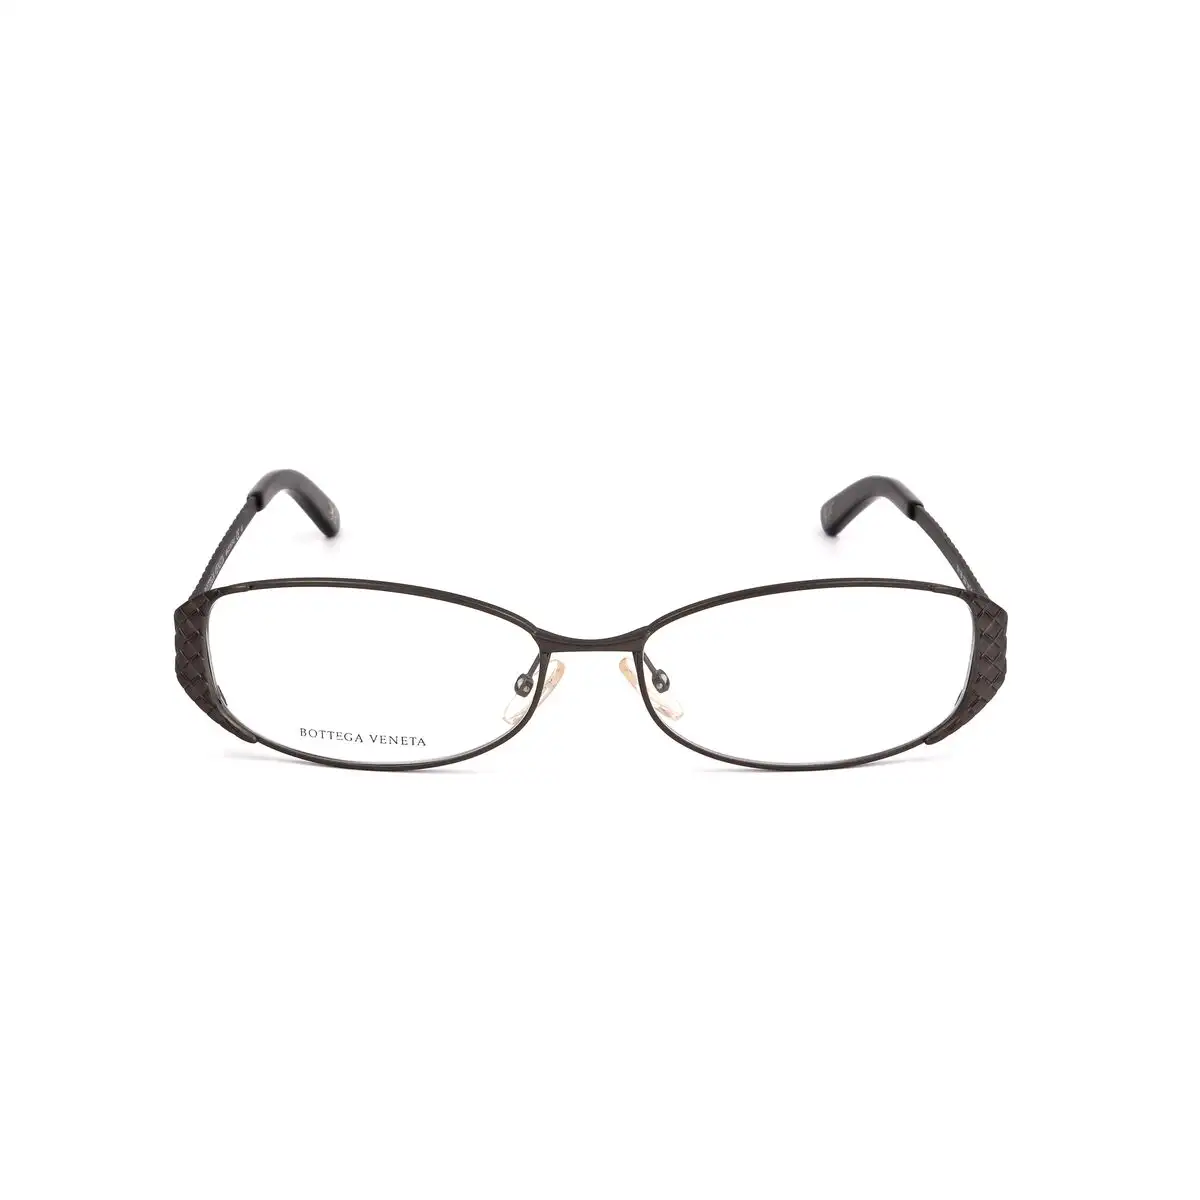 Monture de lunettes femme bottega veneta bv 138 gcx argente_9522. DIAYTAR SENEGAL - L'Écrin de Vos Désirs Shopping. Parcourez notre boutique en ligne et explorez des produits minutieusement choisis pour répondre à vos envies les plus exigeantes.